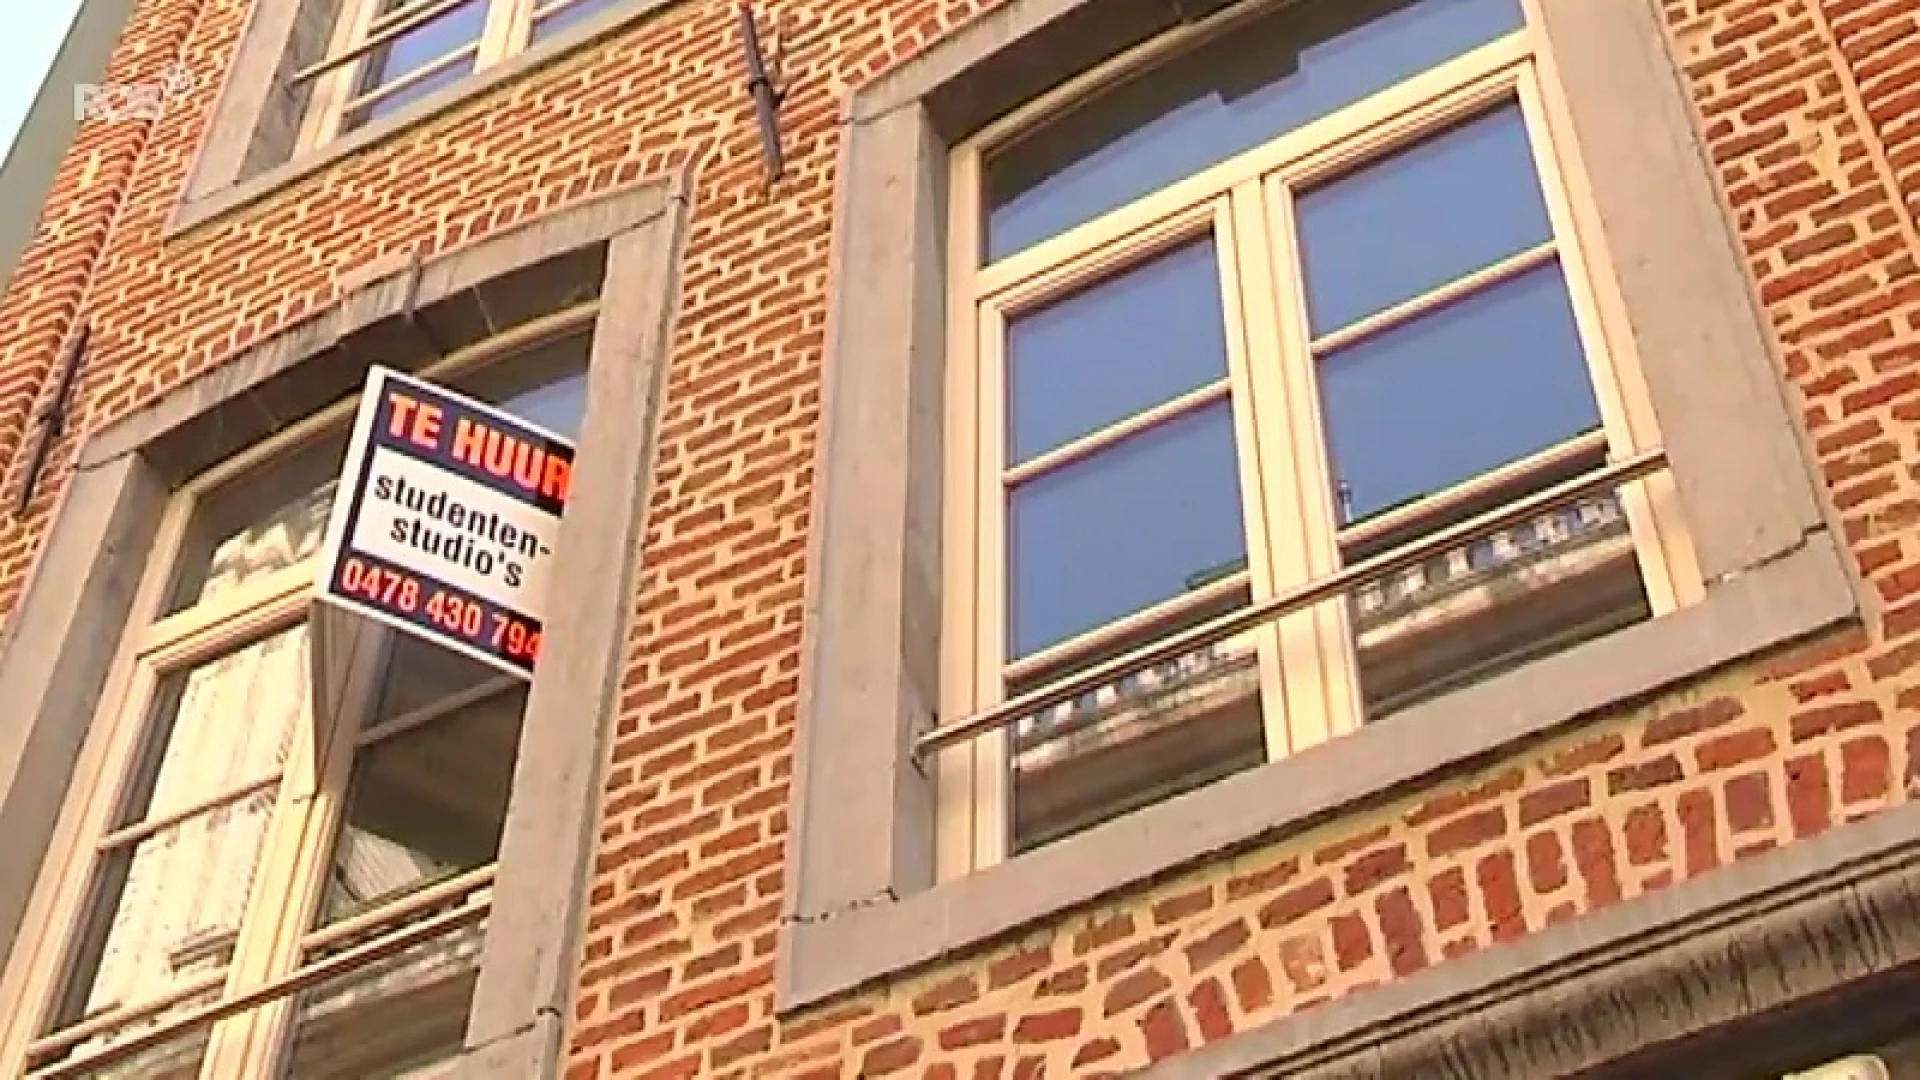 Amper 600 studentenkoten meer te huur in Leuven, anderhalve maand voor academiejaar start